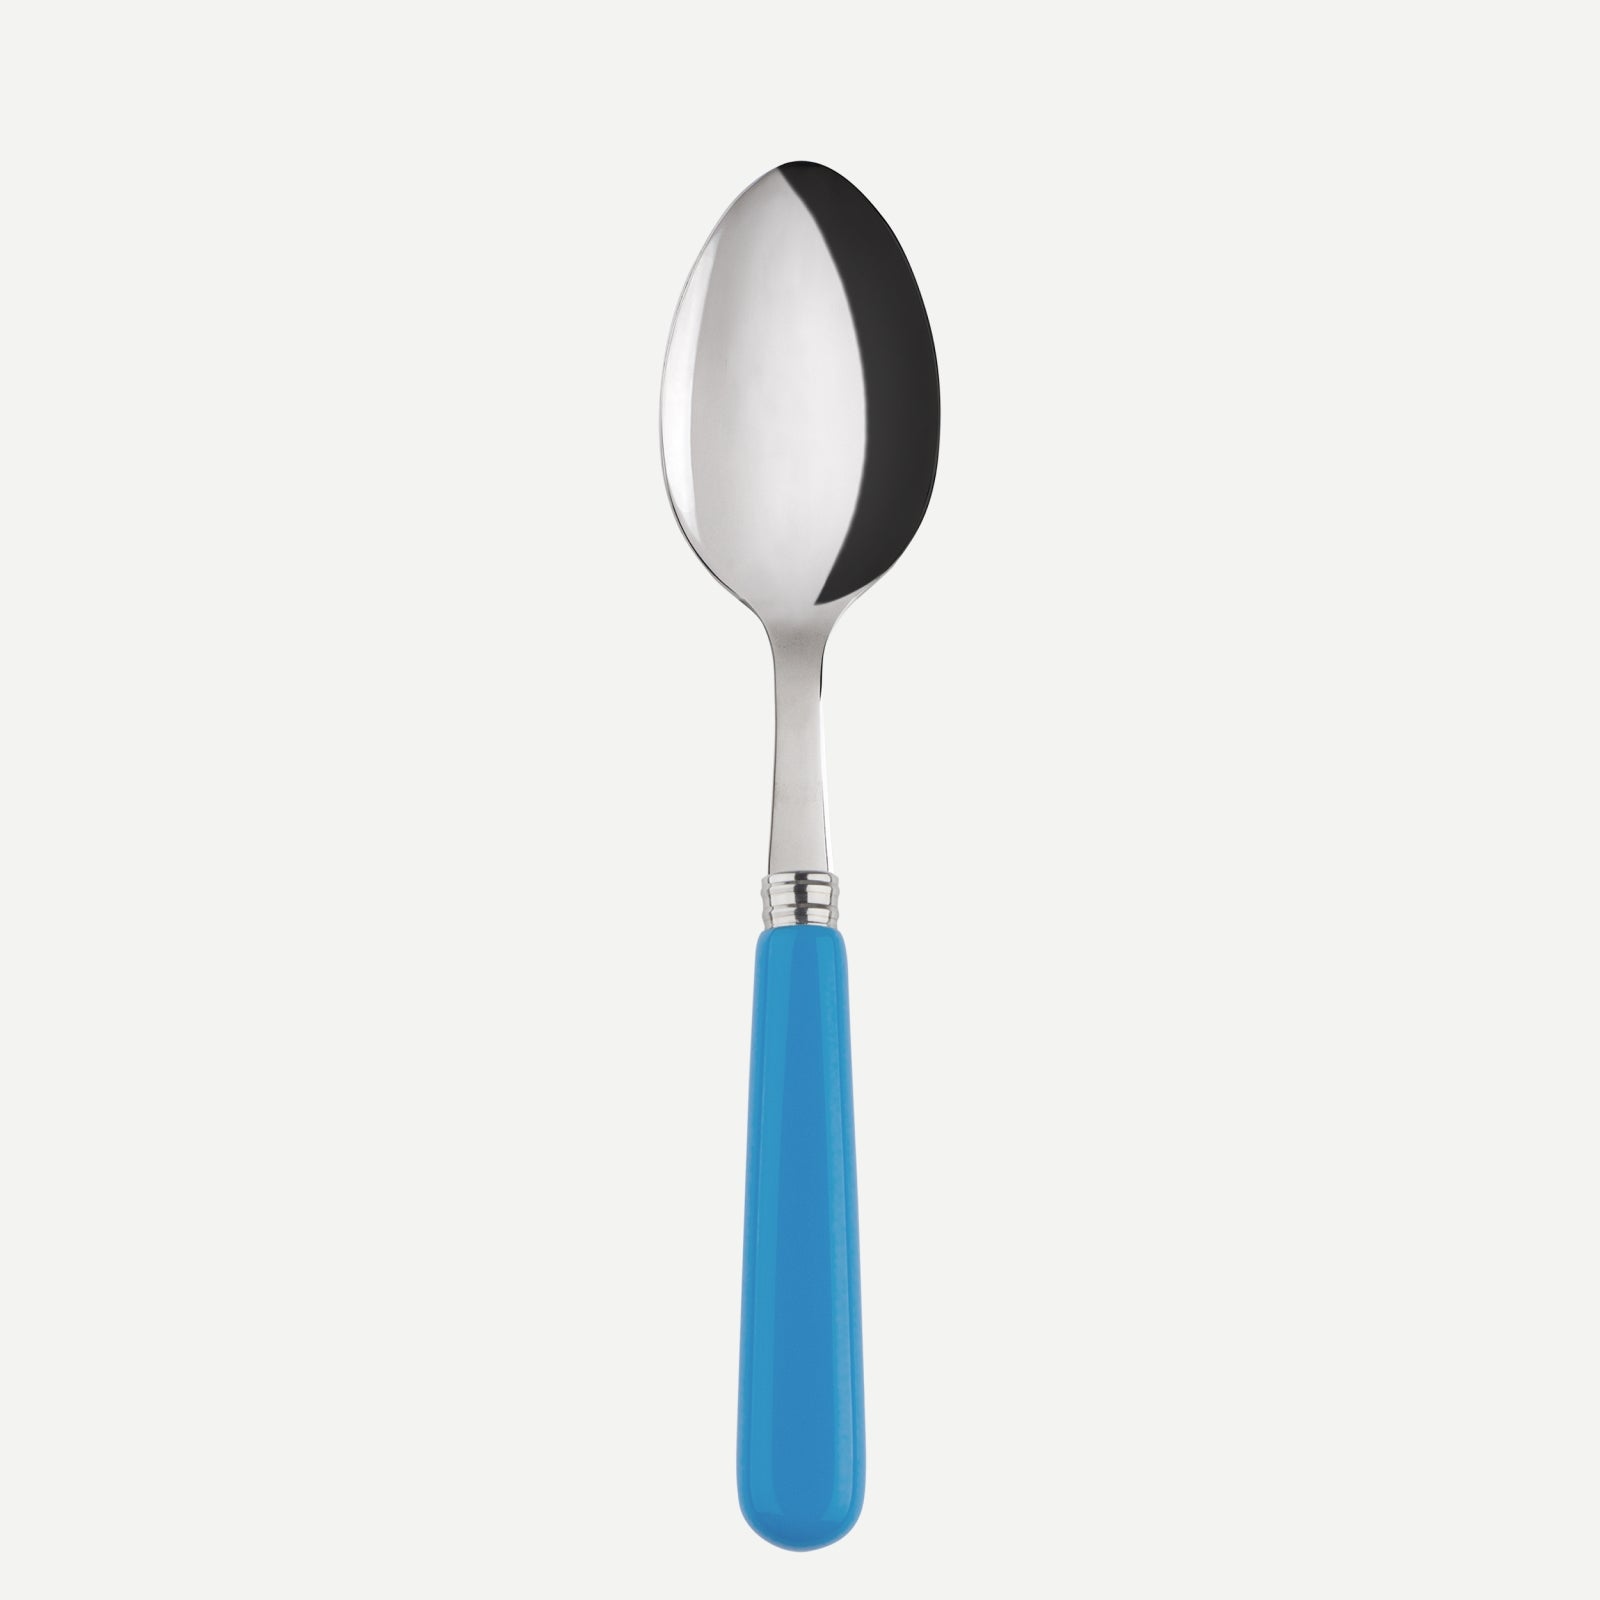 Soup spoon - Pop unis - Cerulean blue